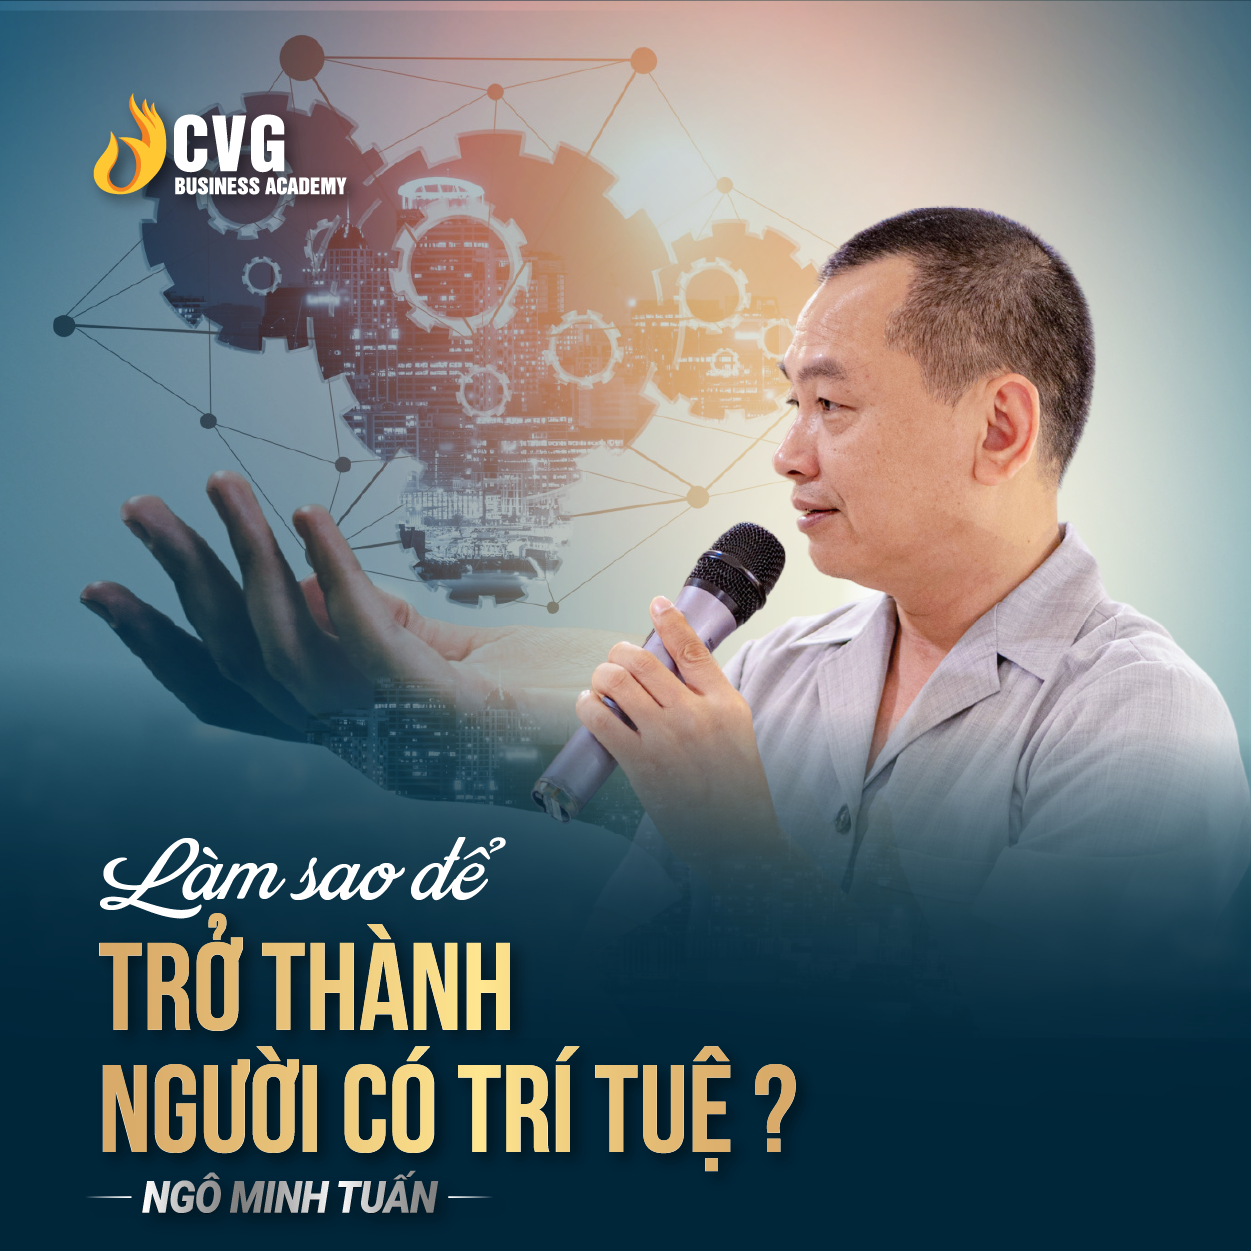 LÀM SAO ĐỂ TRỞ THÀNH NGƯỜI CÓ TRÍ TUỆ ? | Ngô Minh Tuấn | Học Viện CEO Việt Nam Global